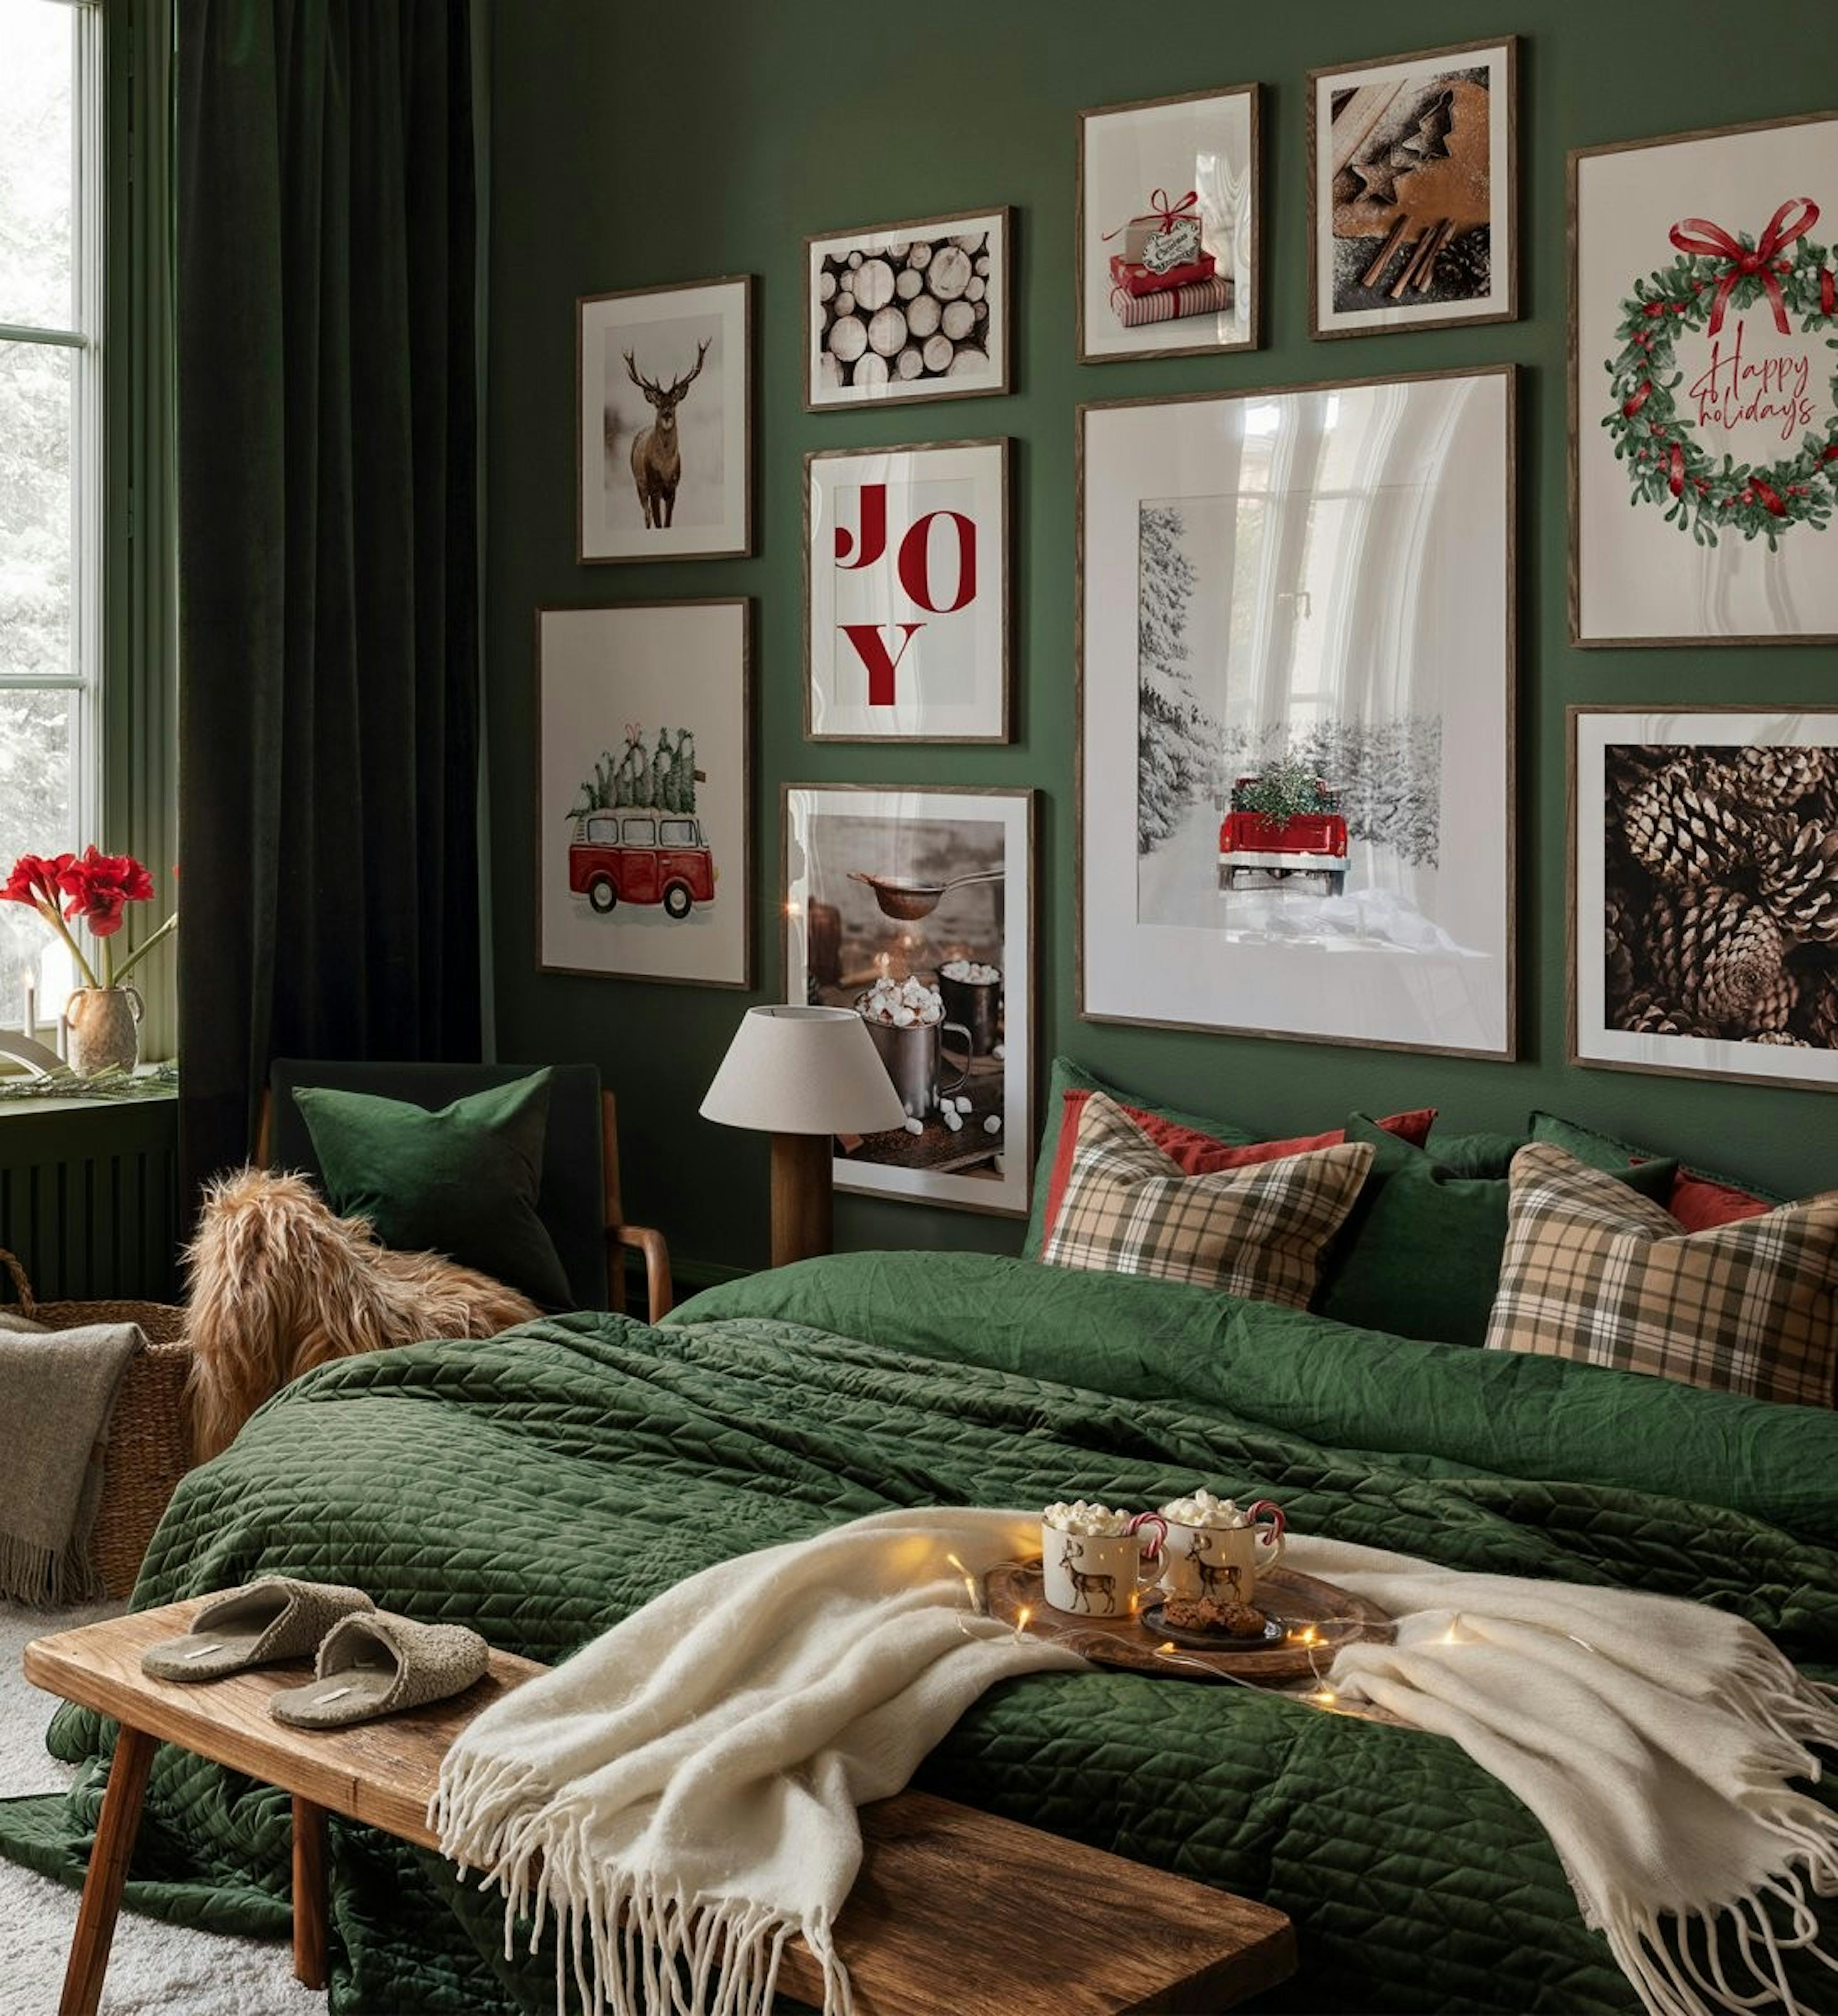 جدار معرض عيد الميلاد مع اقتباسات حمراء وخضراء وصور فوتوغرافية ورسوم توضيحية بإطارات من خشب البلوط الداكن لغرفة النوم